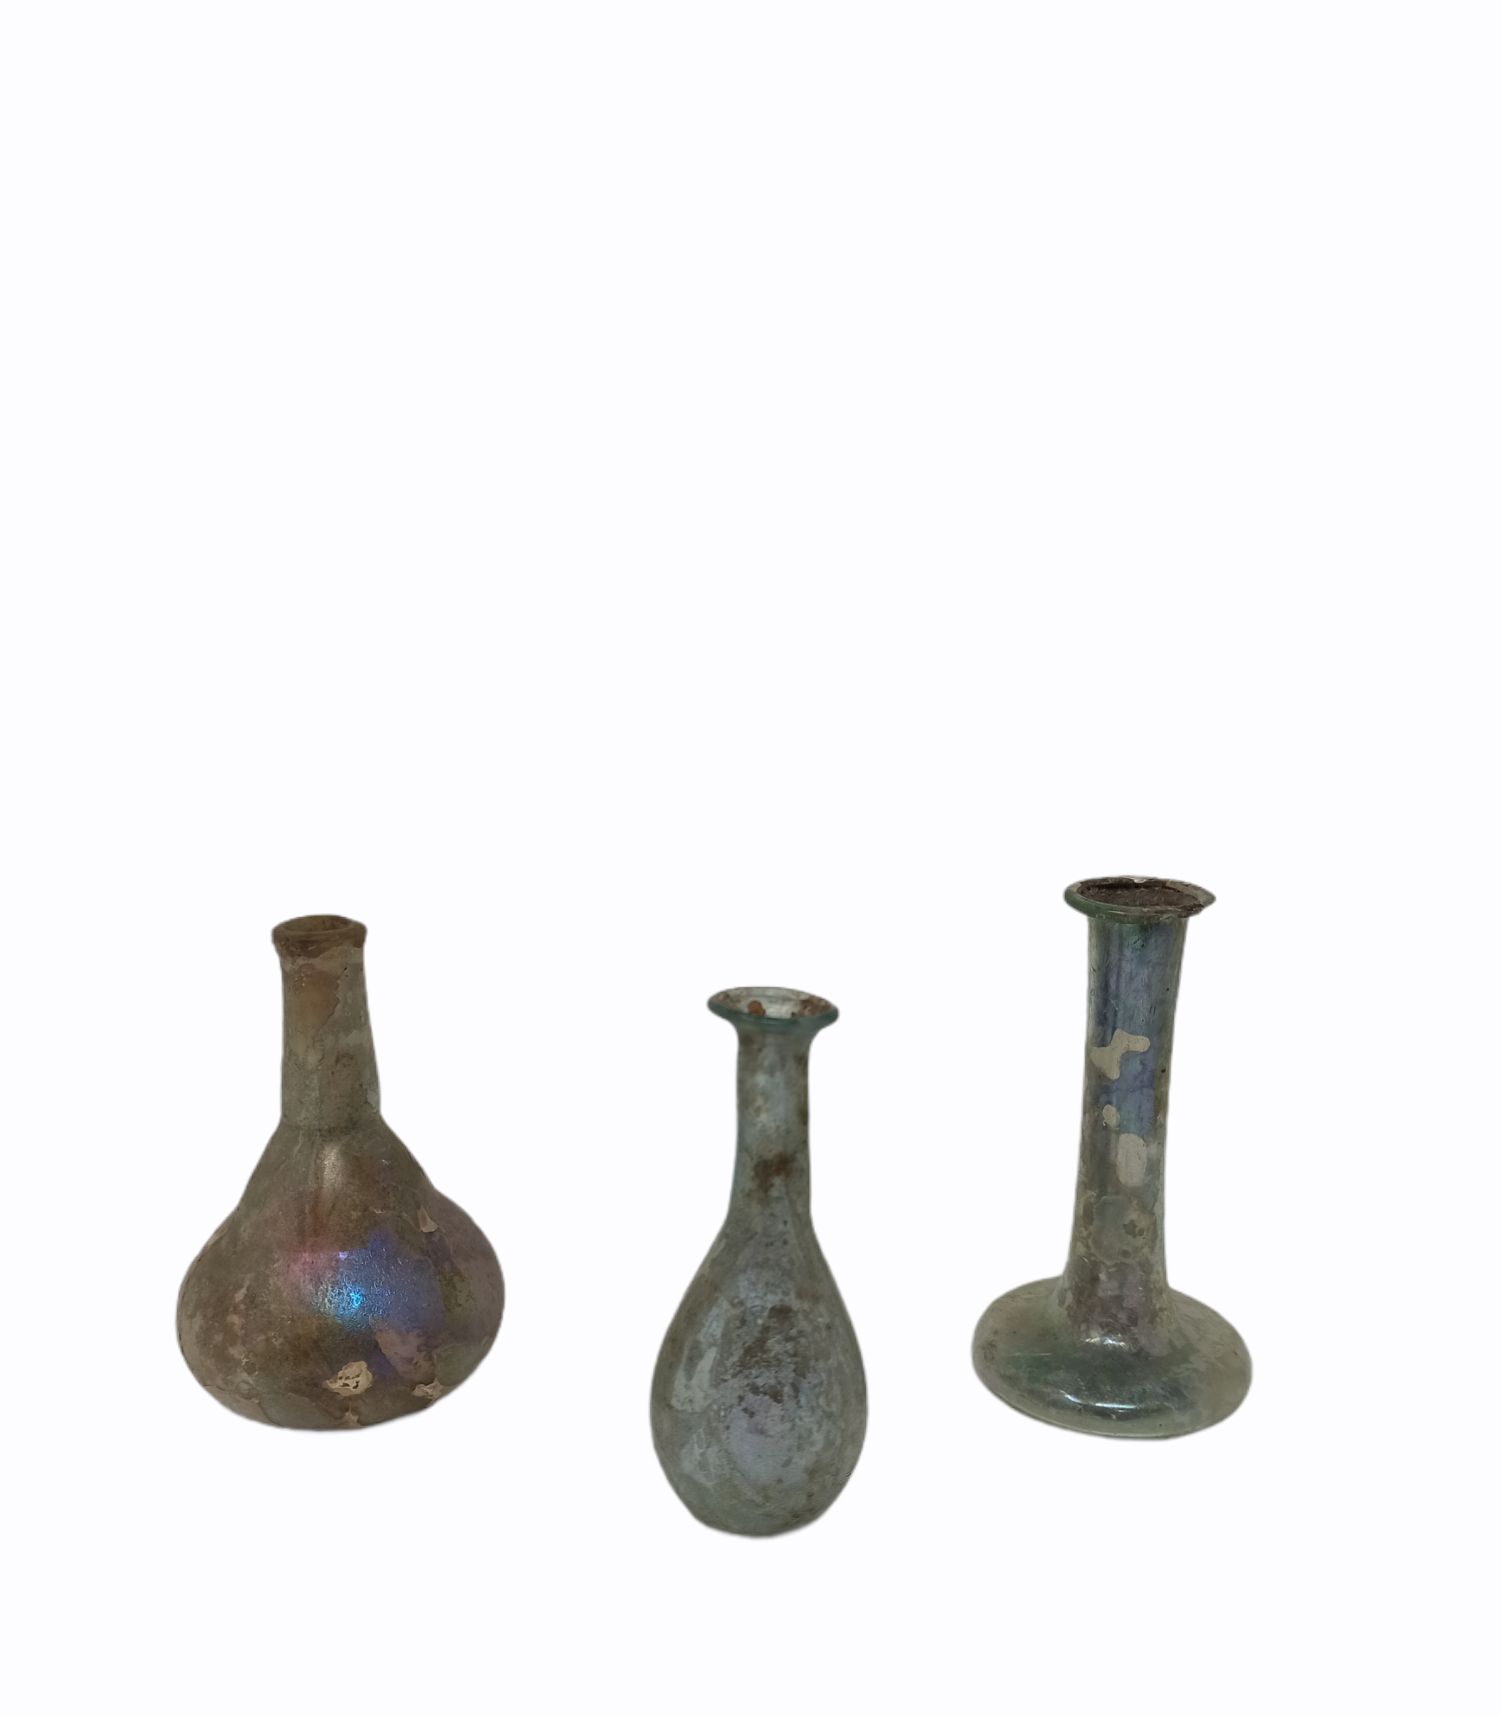 Null 本拍品有三件，其中两件是高颈的梨形琴身。

带蓝色的彩虹色玻璃

罗马时期，1-3世纪